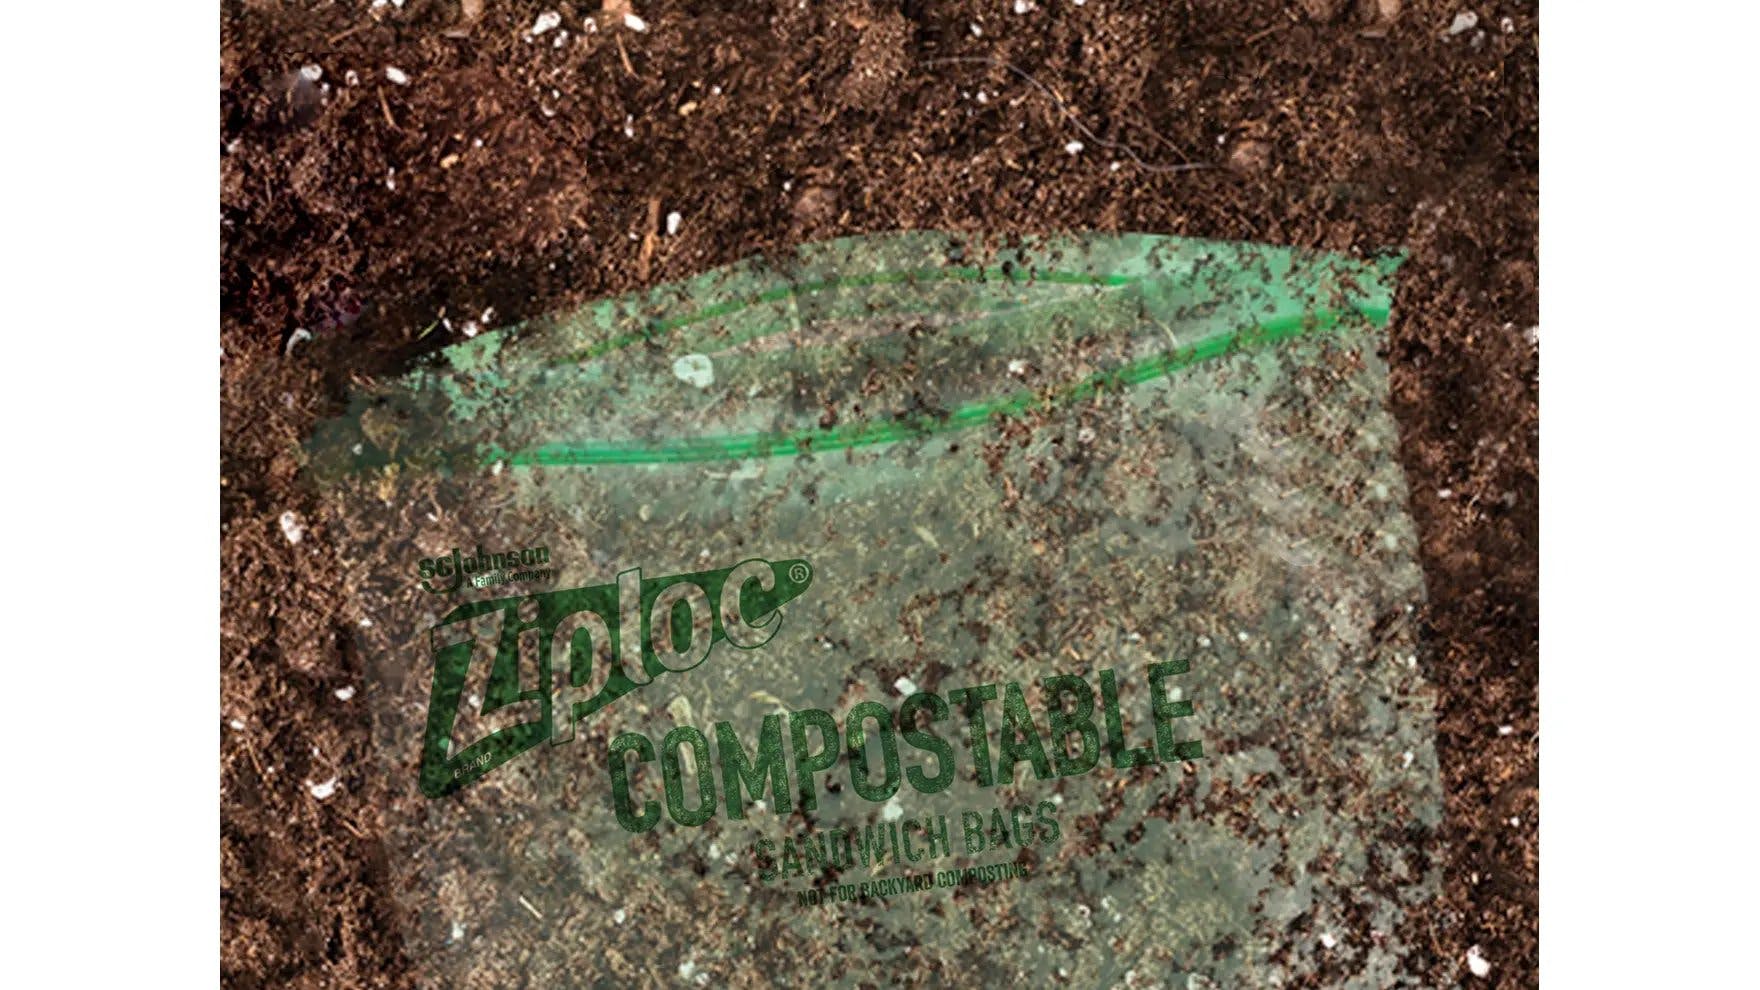 Un sac à sandwich compostable de marque Ziploc® recouvert de saleté